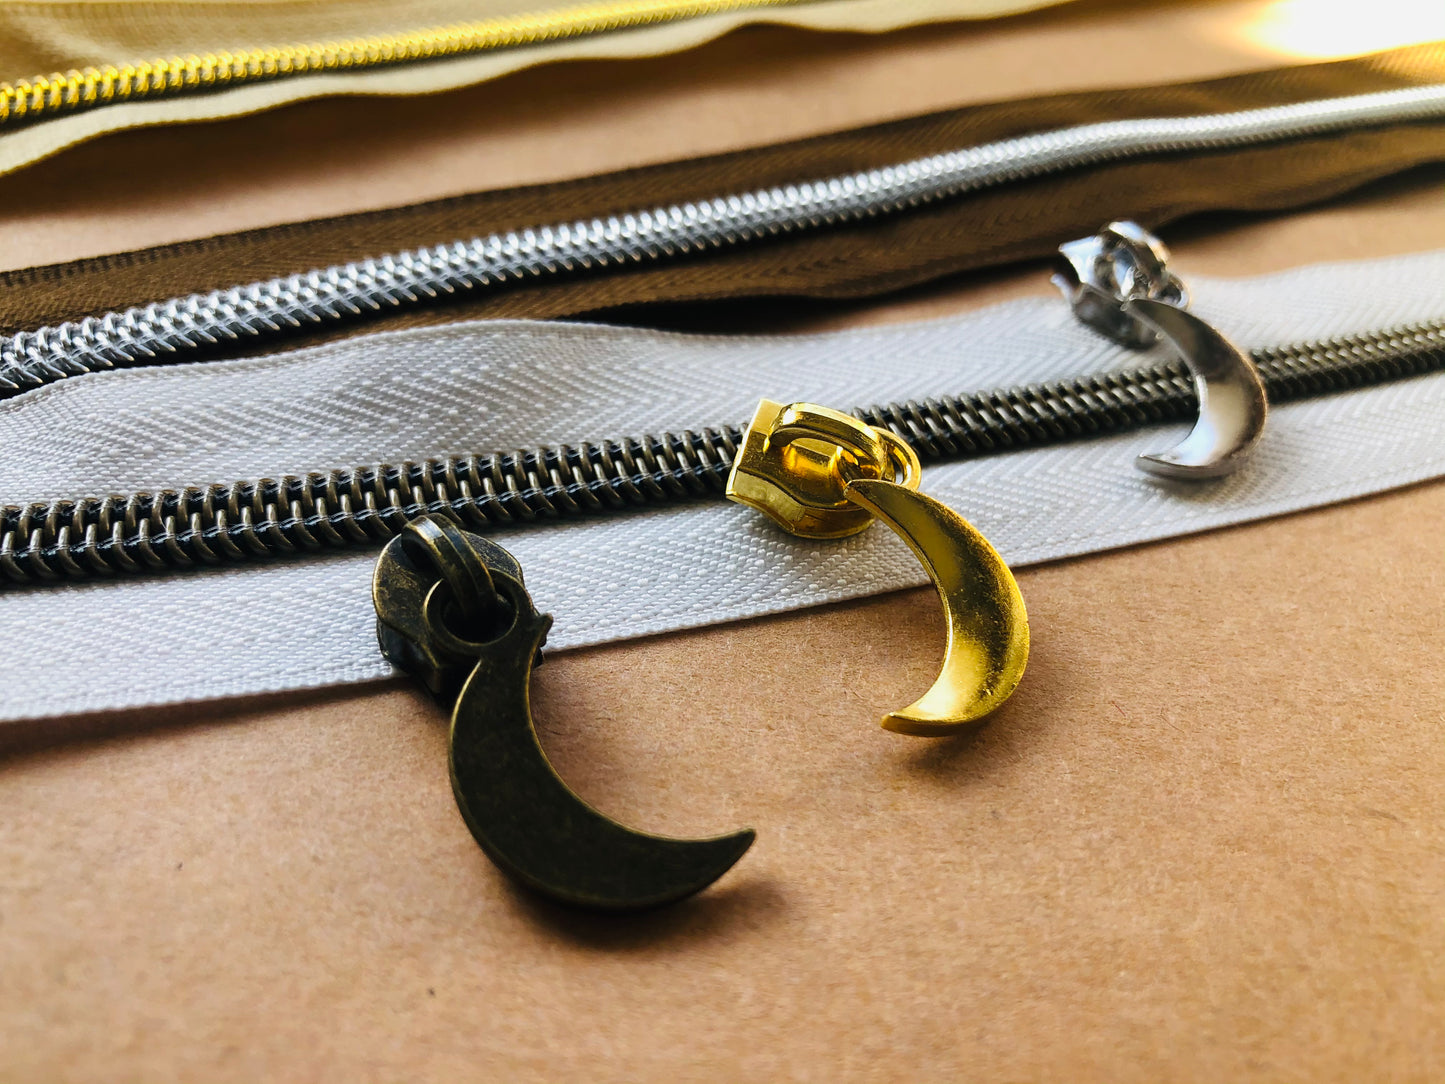 Crescent moon Zipper pulls, Size 5 zipper pulls for nylon zipper tapes, zipper pulls in antique brass, sliver, gold, rose gold, gun metal